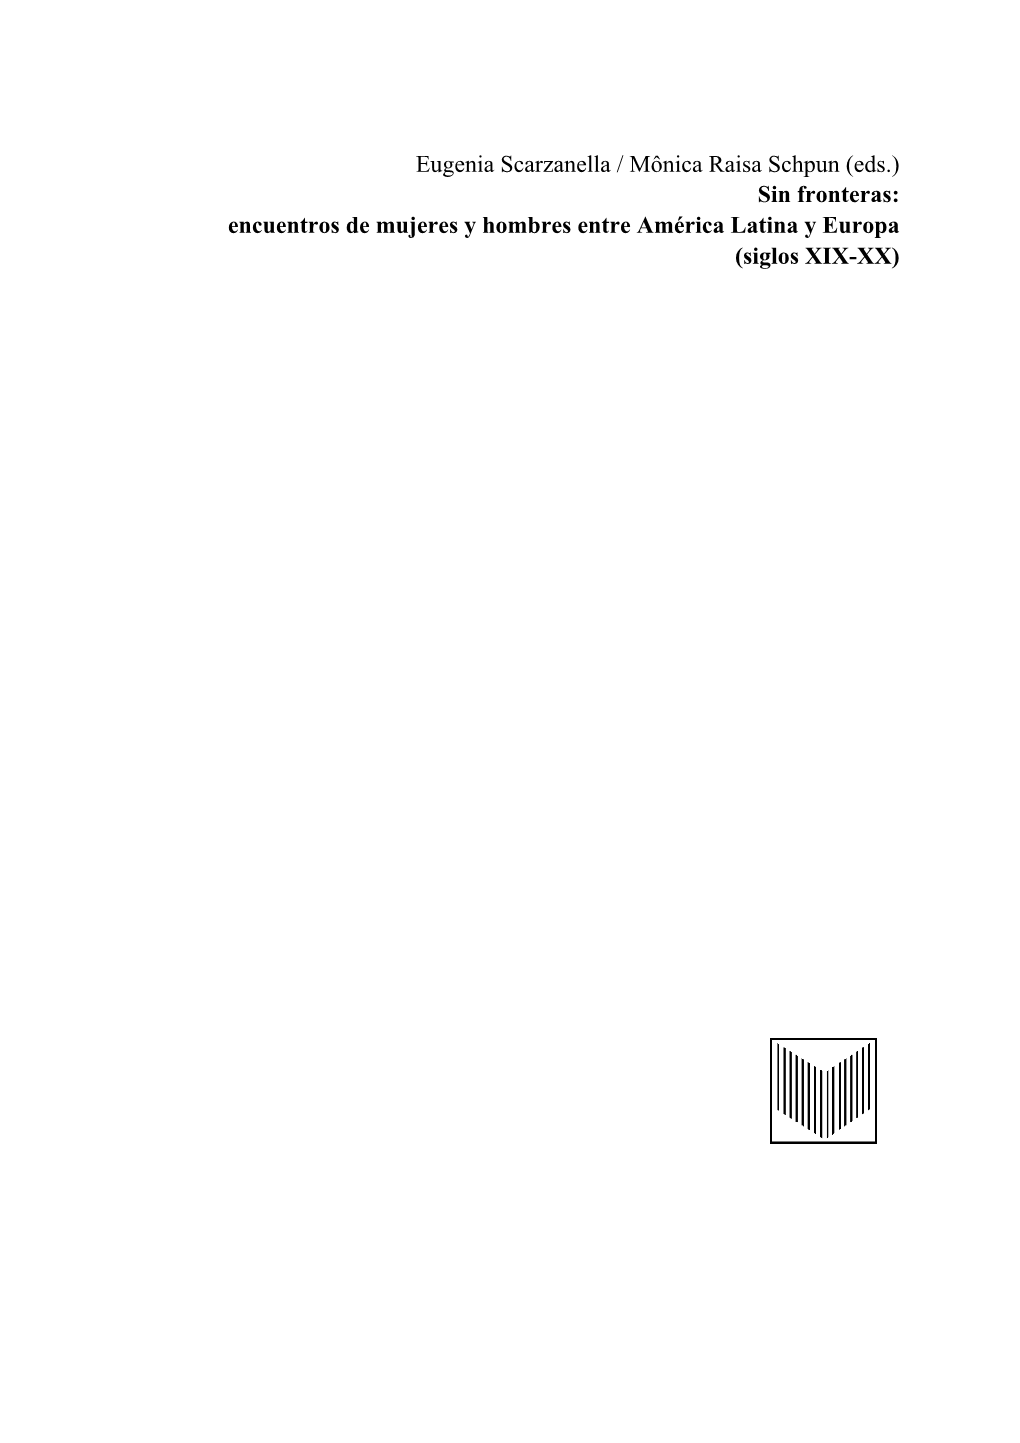 Eugenia Scarzanella / Mônica Raisa Schpun (Eds.) Sin Fronteras: Encuentros De Mujeres Y Hombres Entre América Latina Y Europa (Siglos XIX-XX)